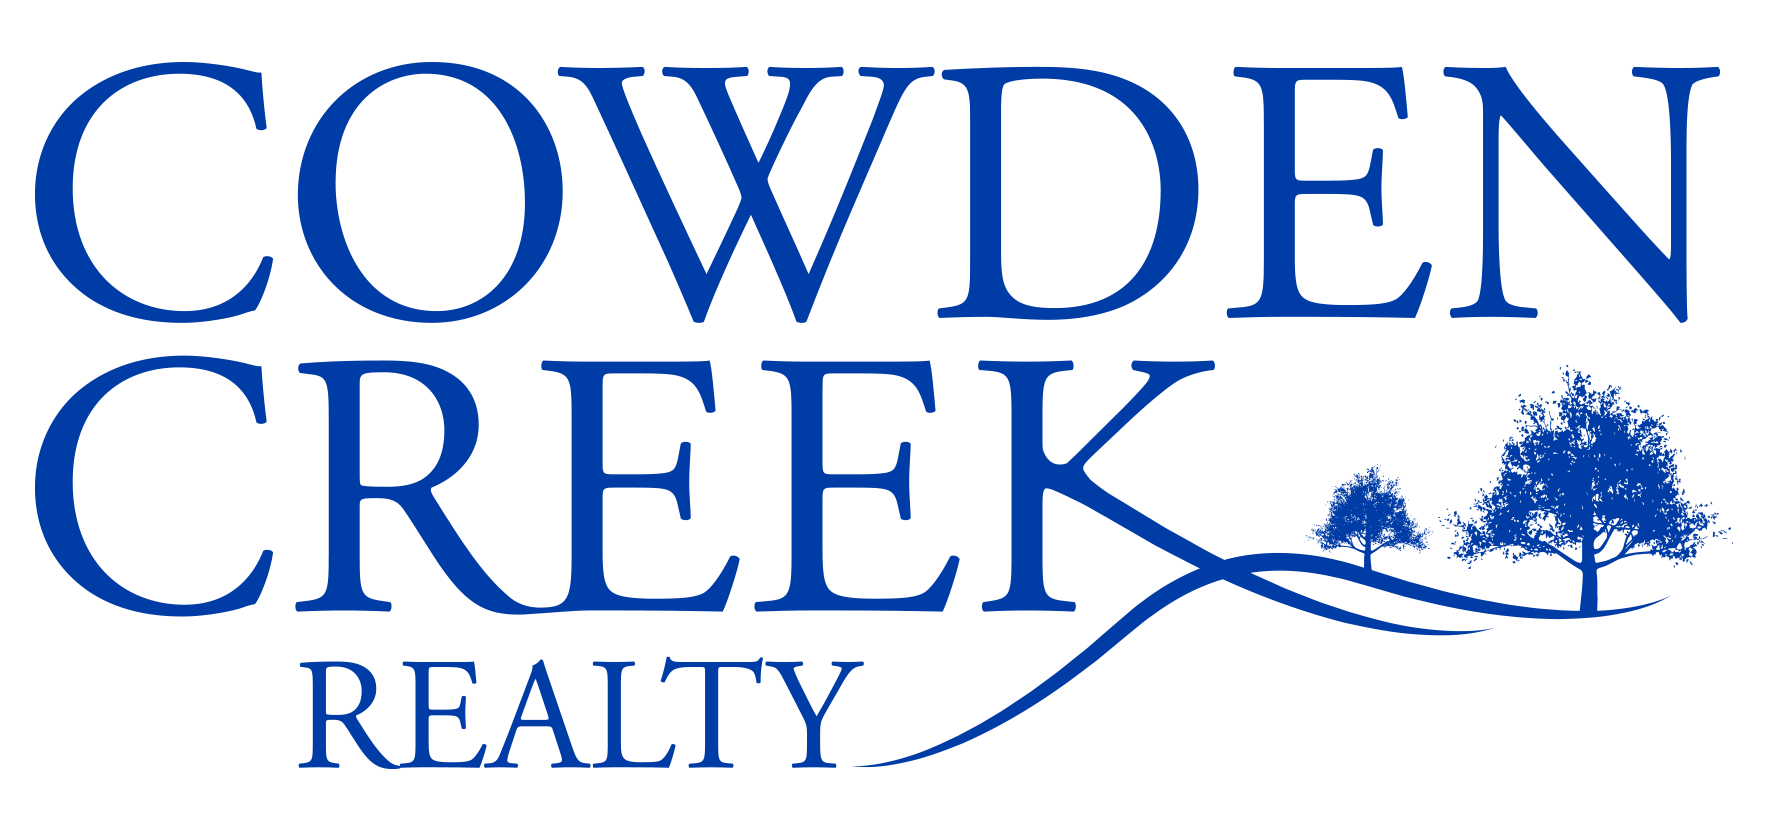 Cowden Creek Realty, LLC